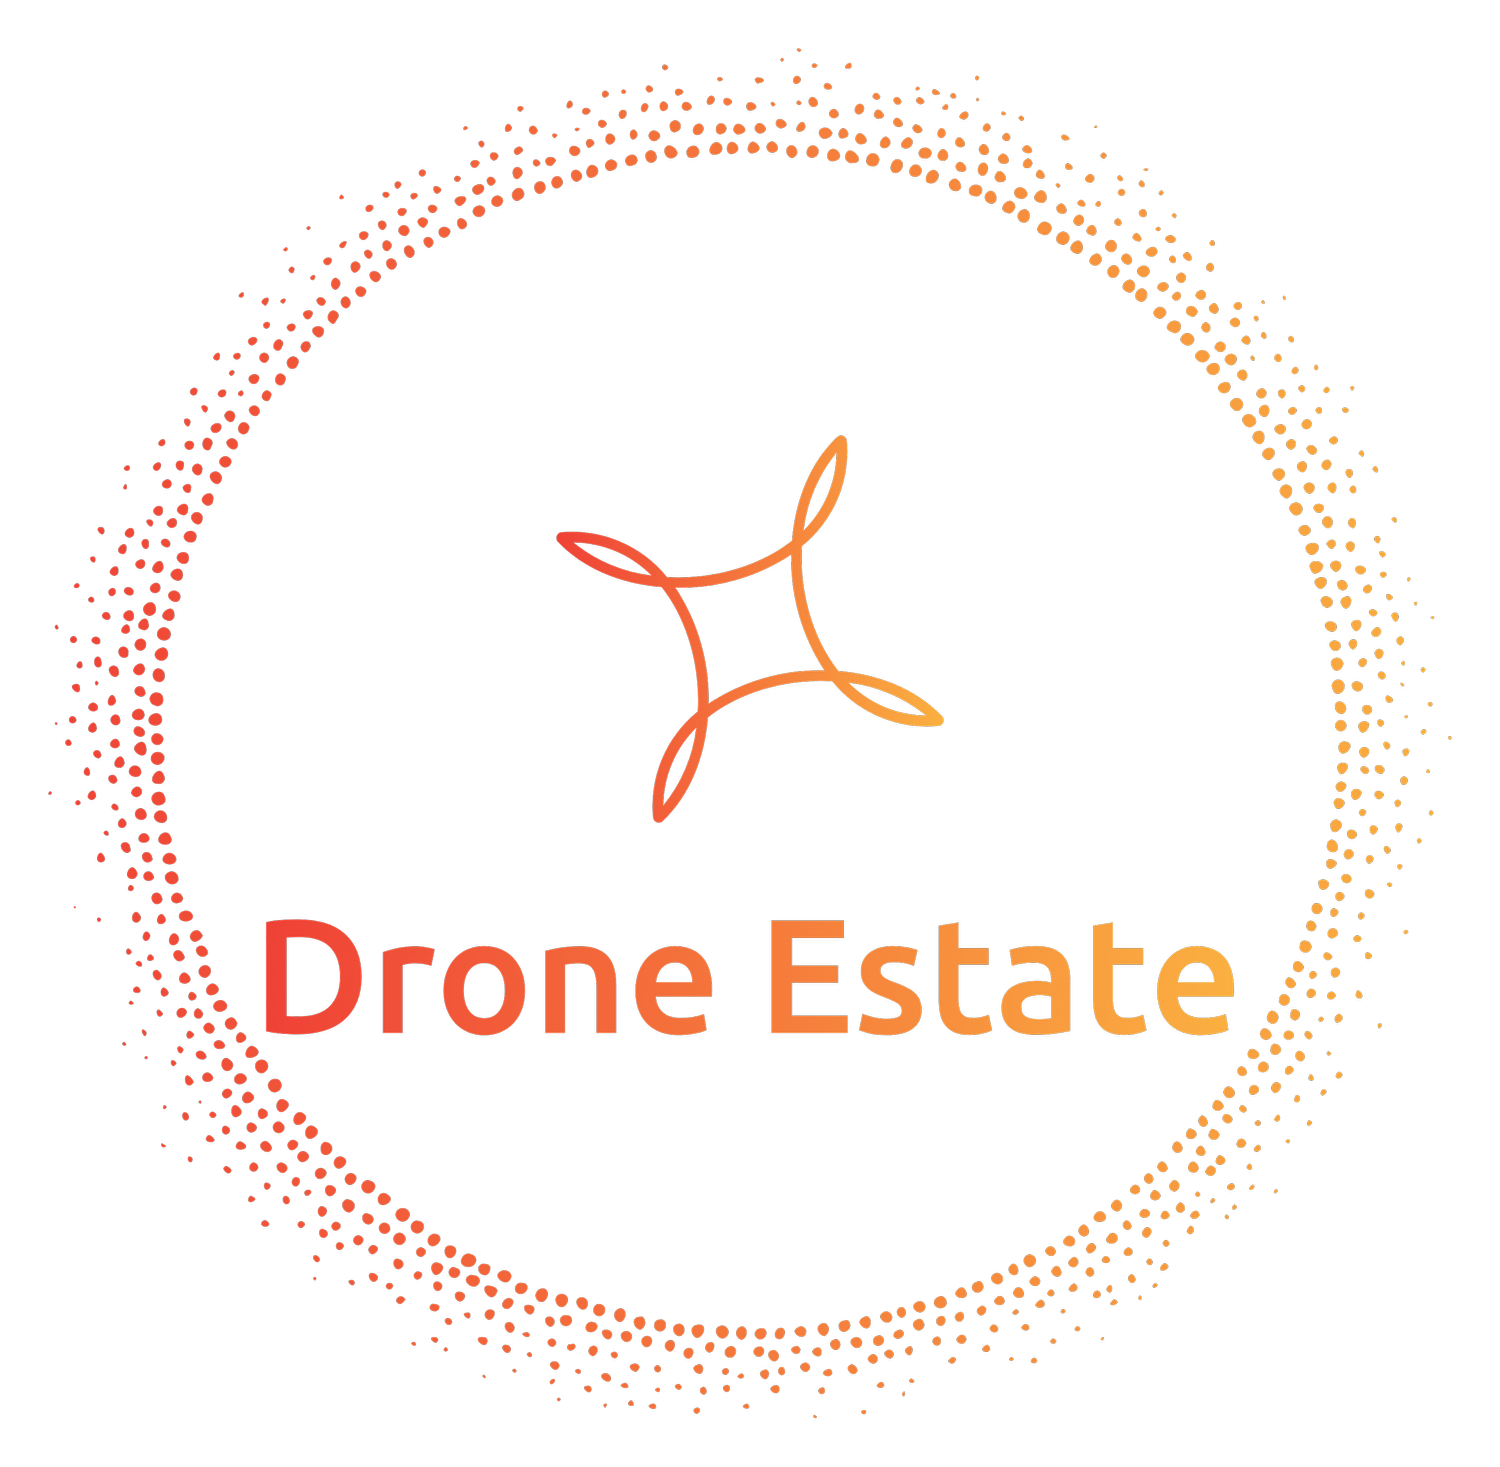 Drone Estate